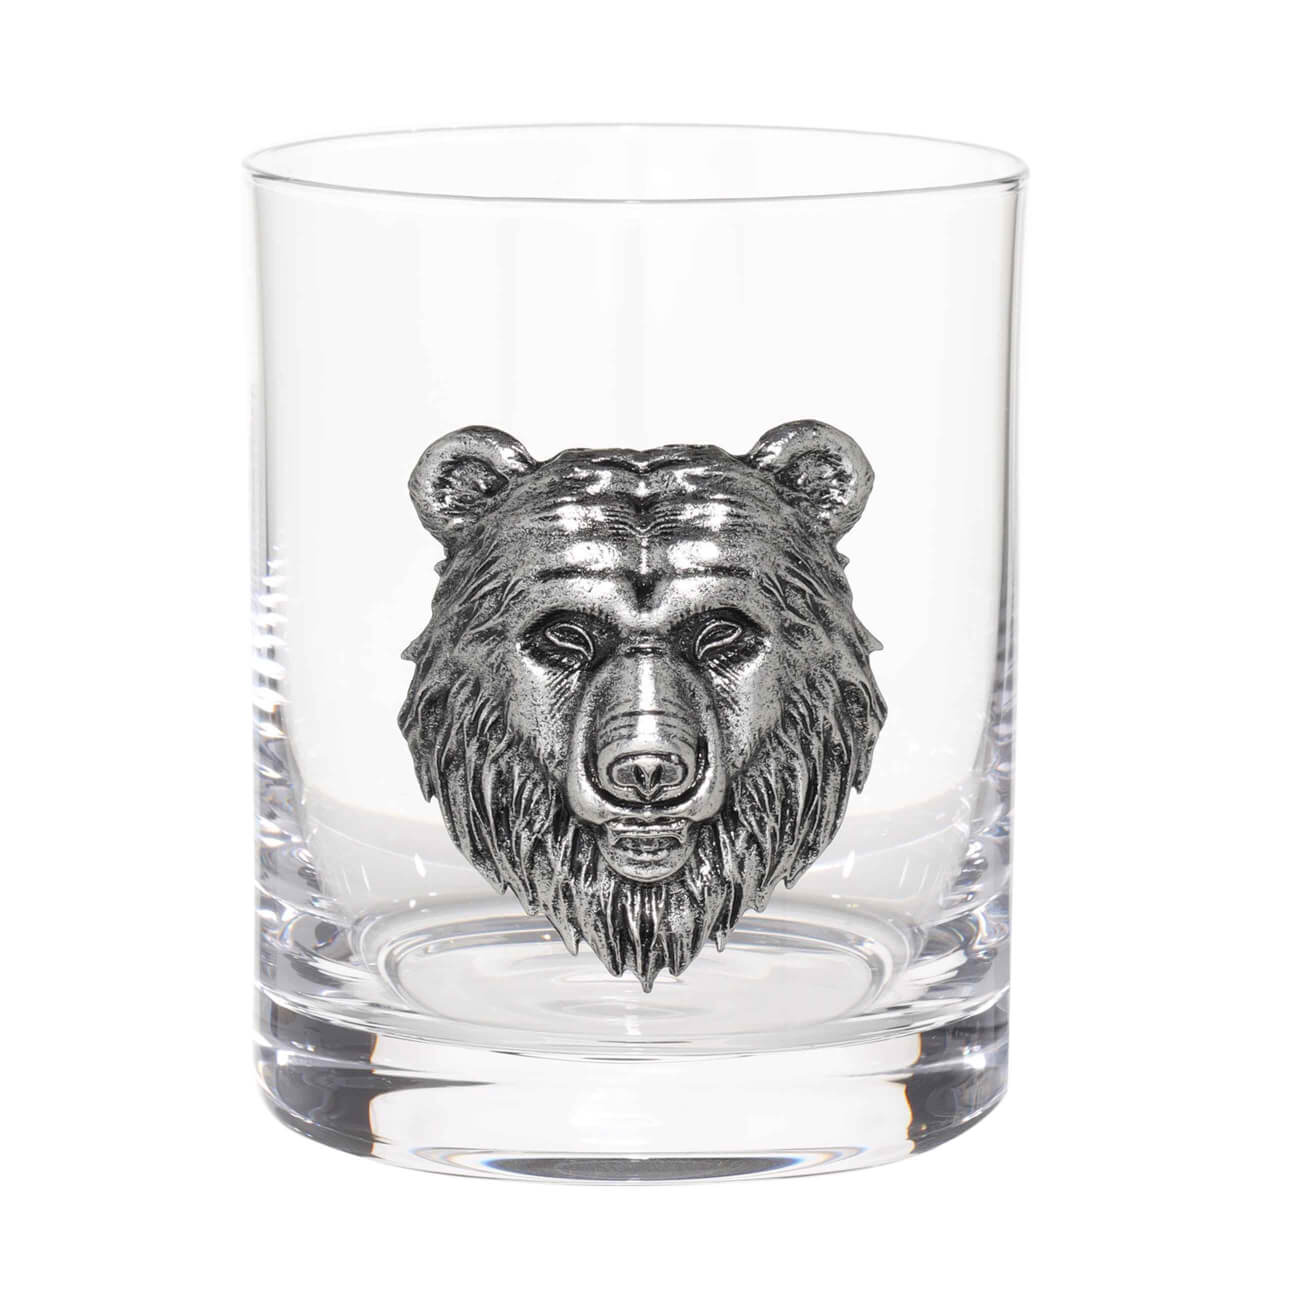 Стакан для виски, 340 мл, стекло/металл, серебристый, Медведь, Lux elements изображение № 1